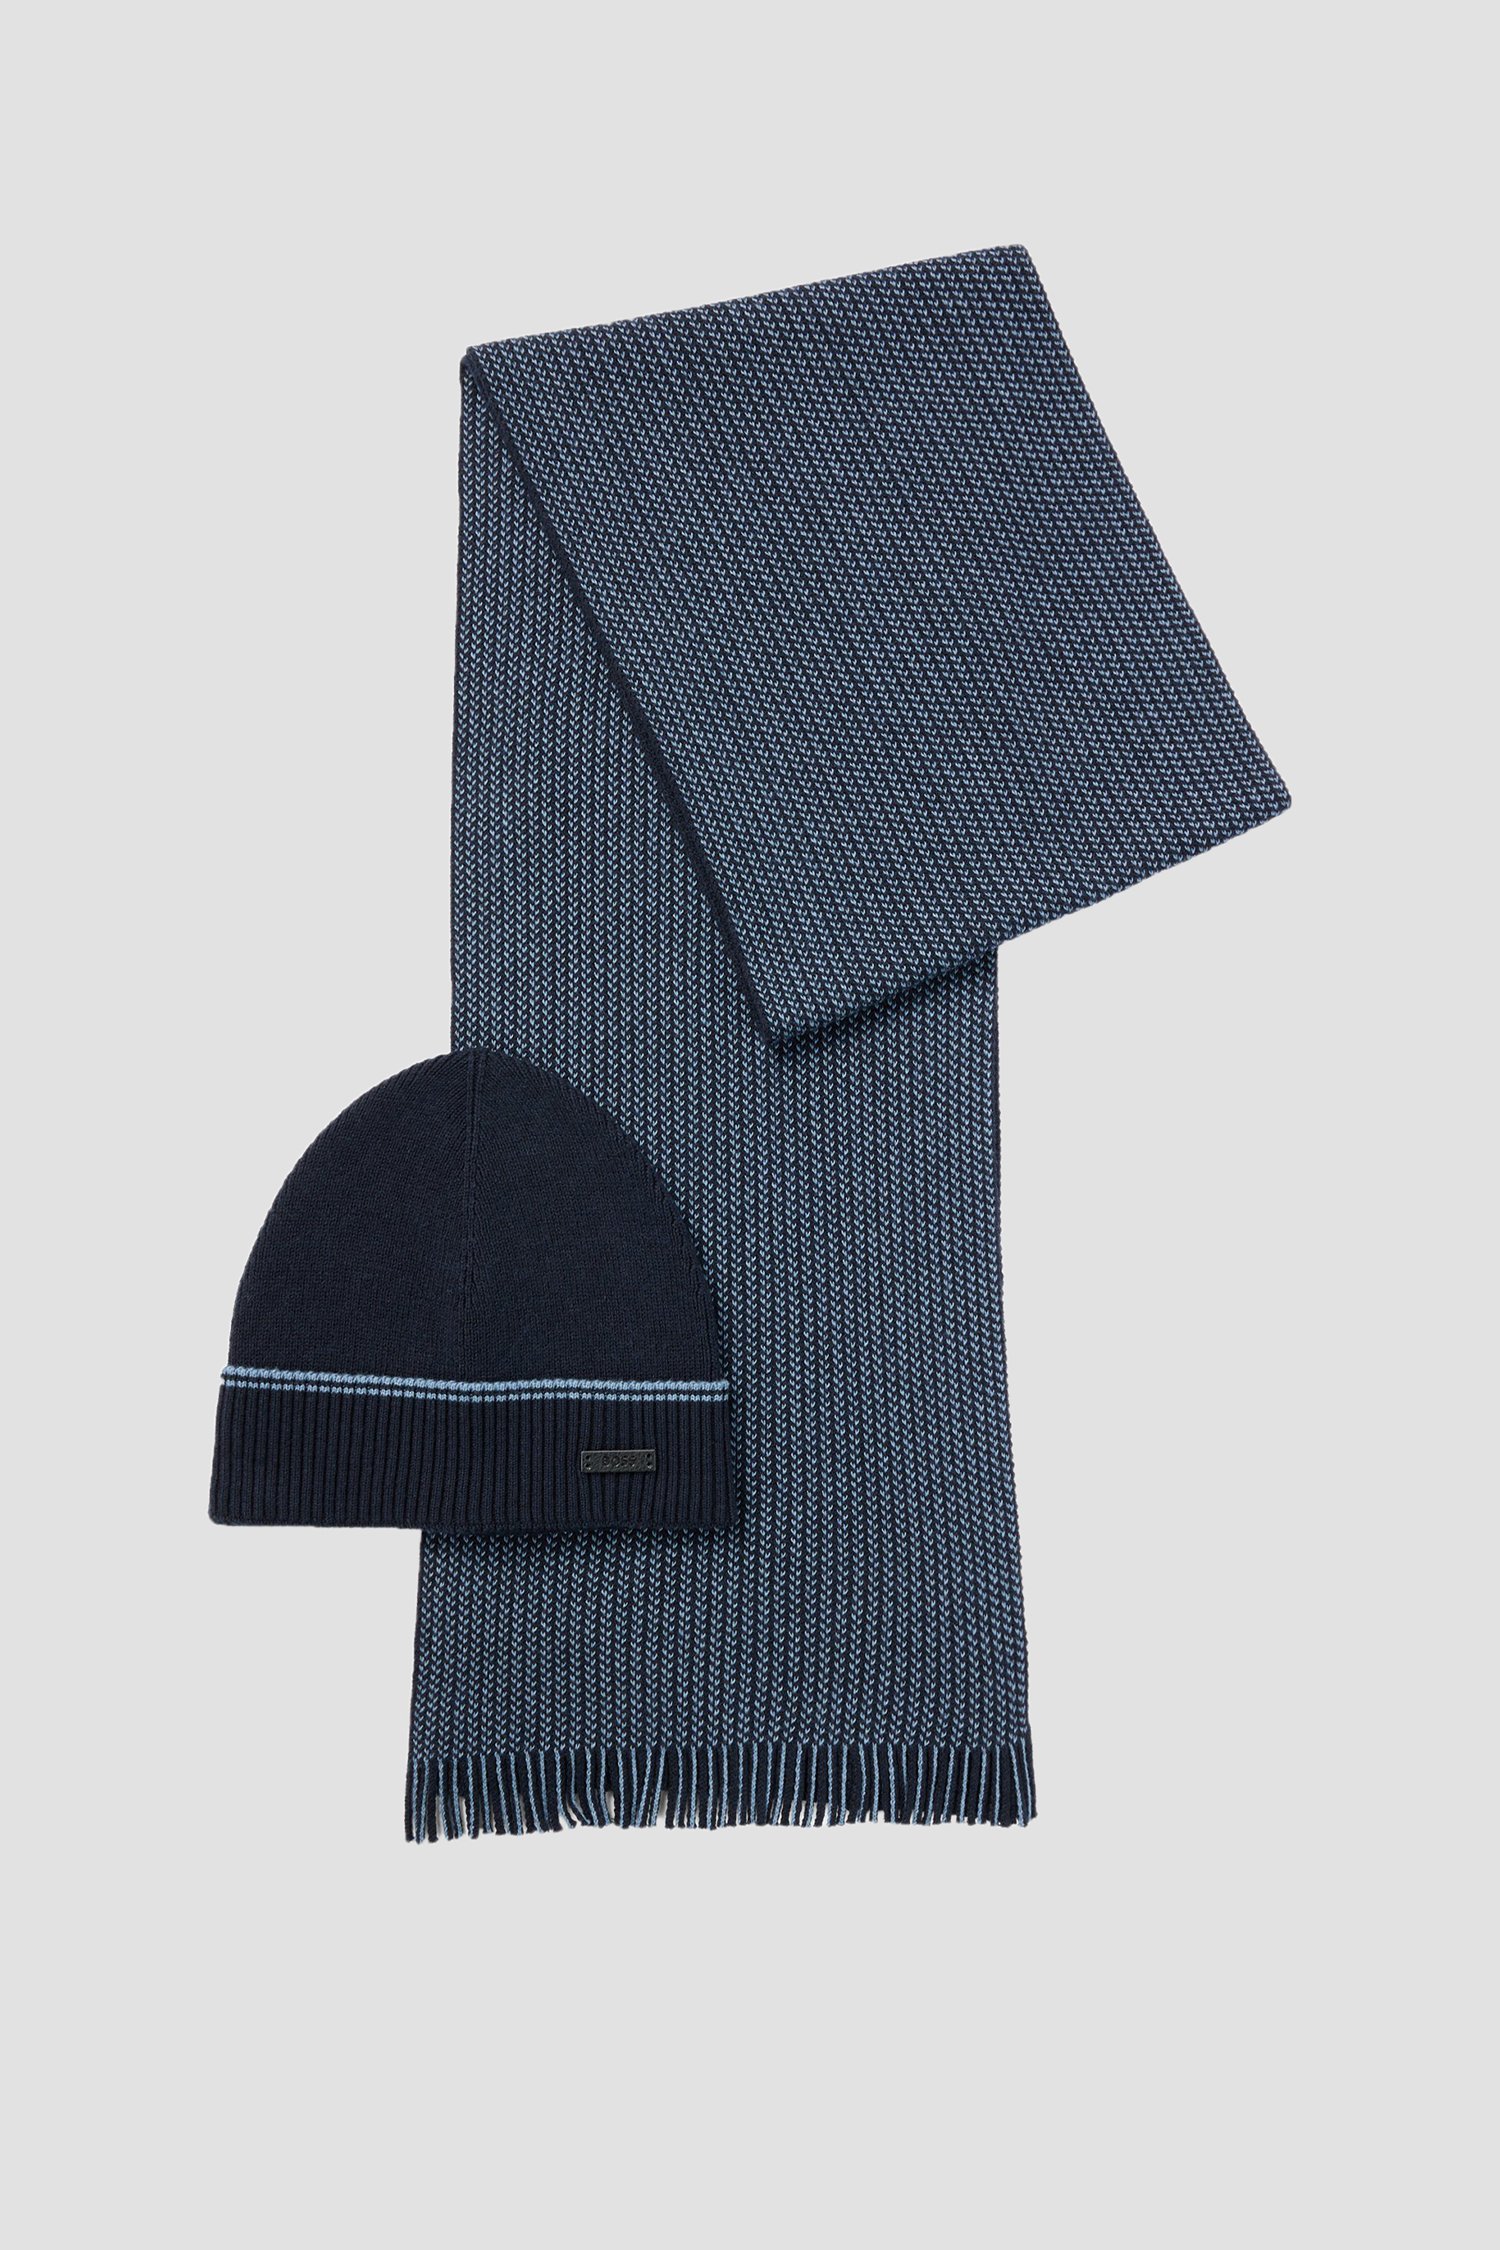 Чоловічий набір аксесуарів (шапка, шарф) 1